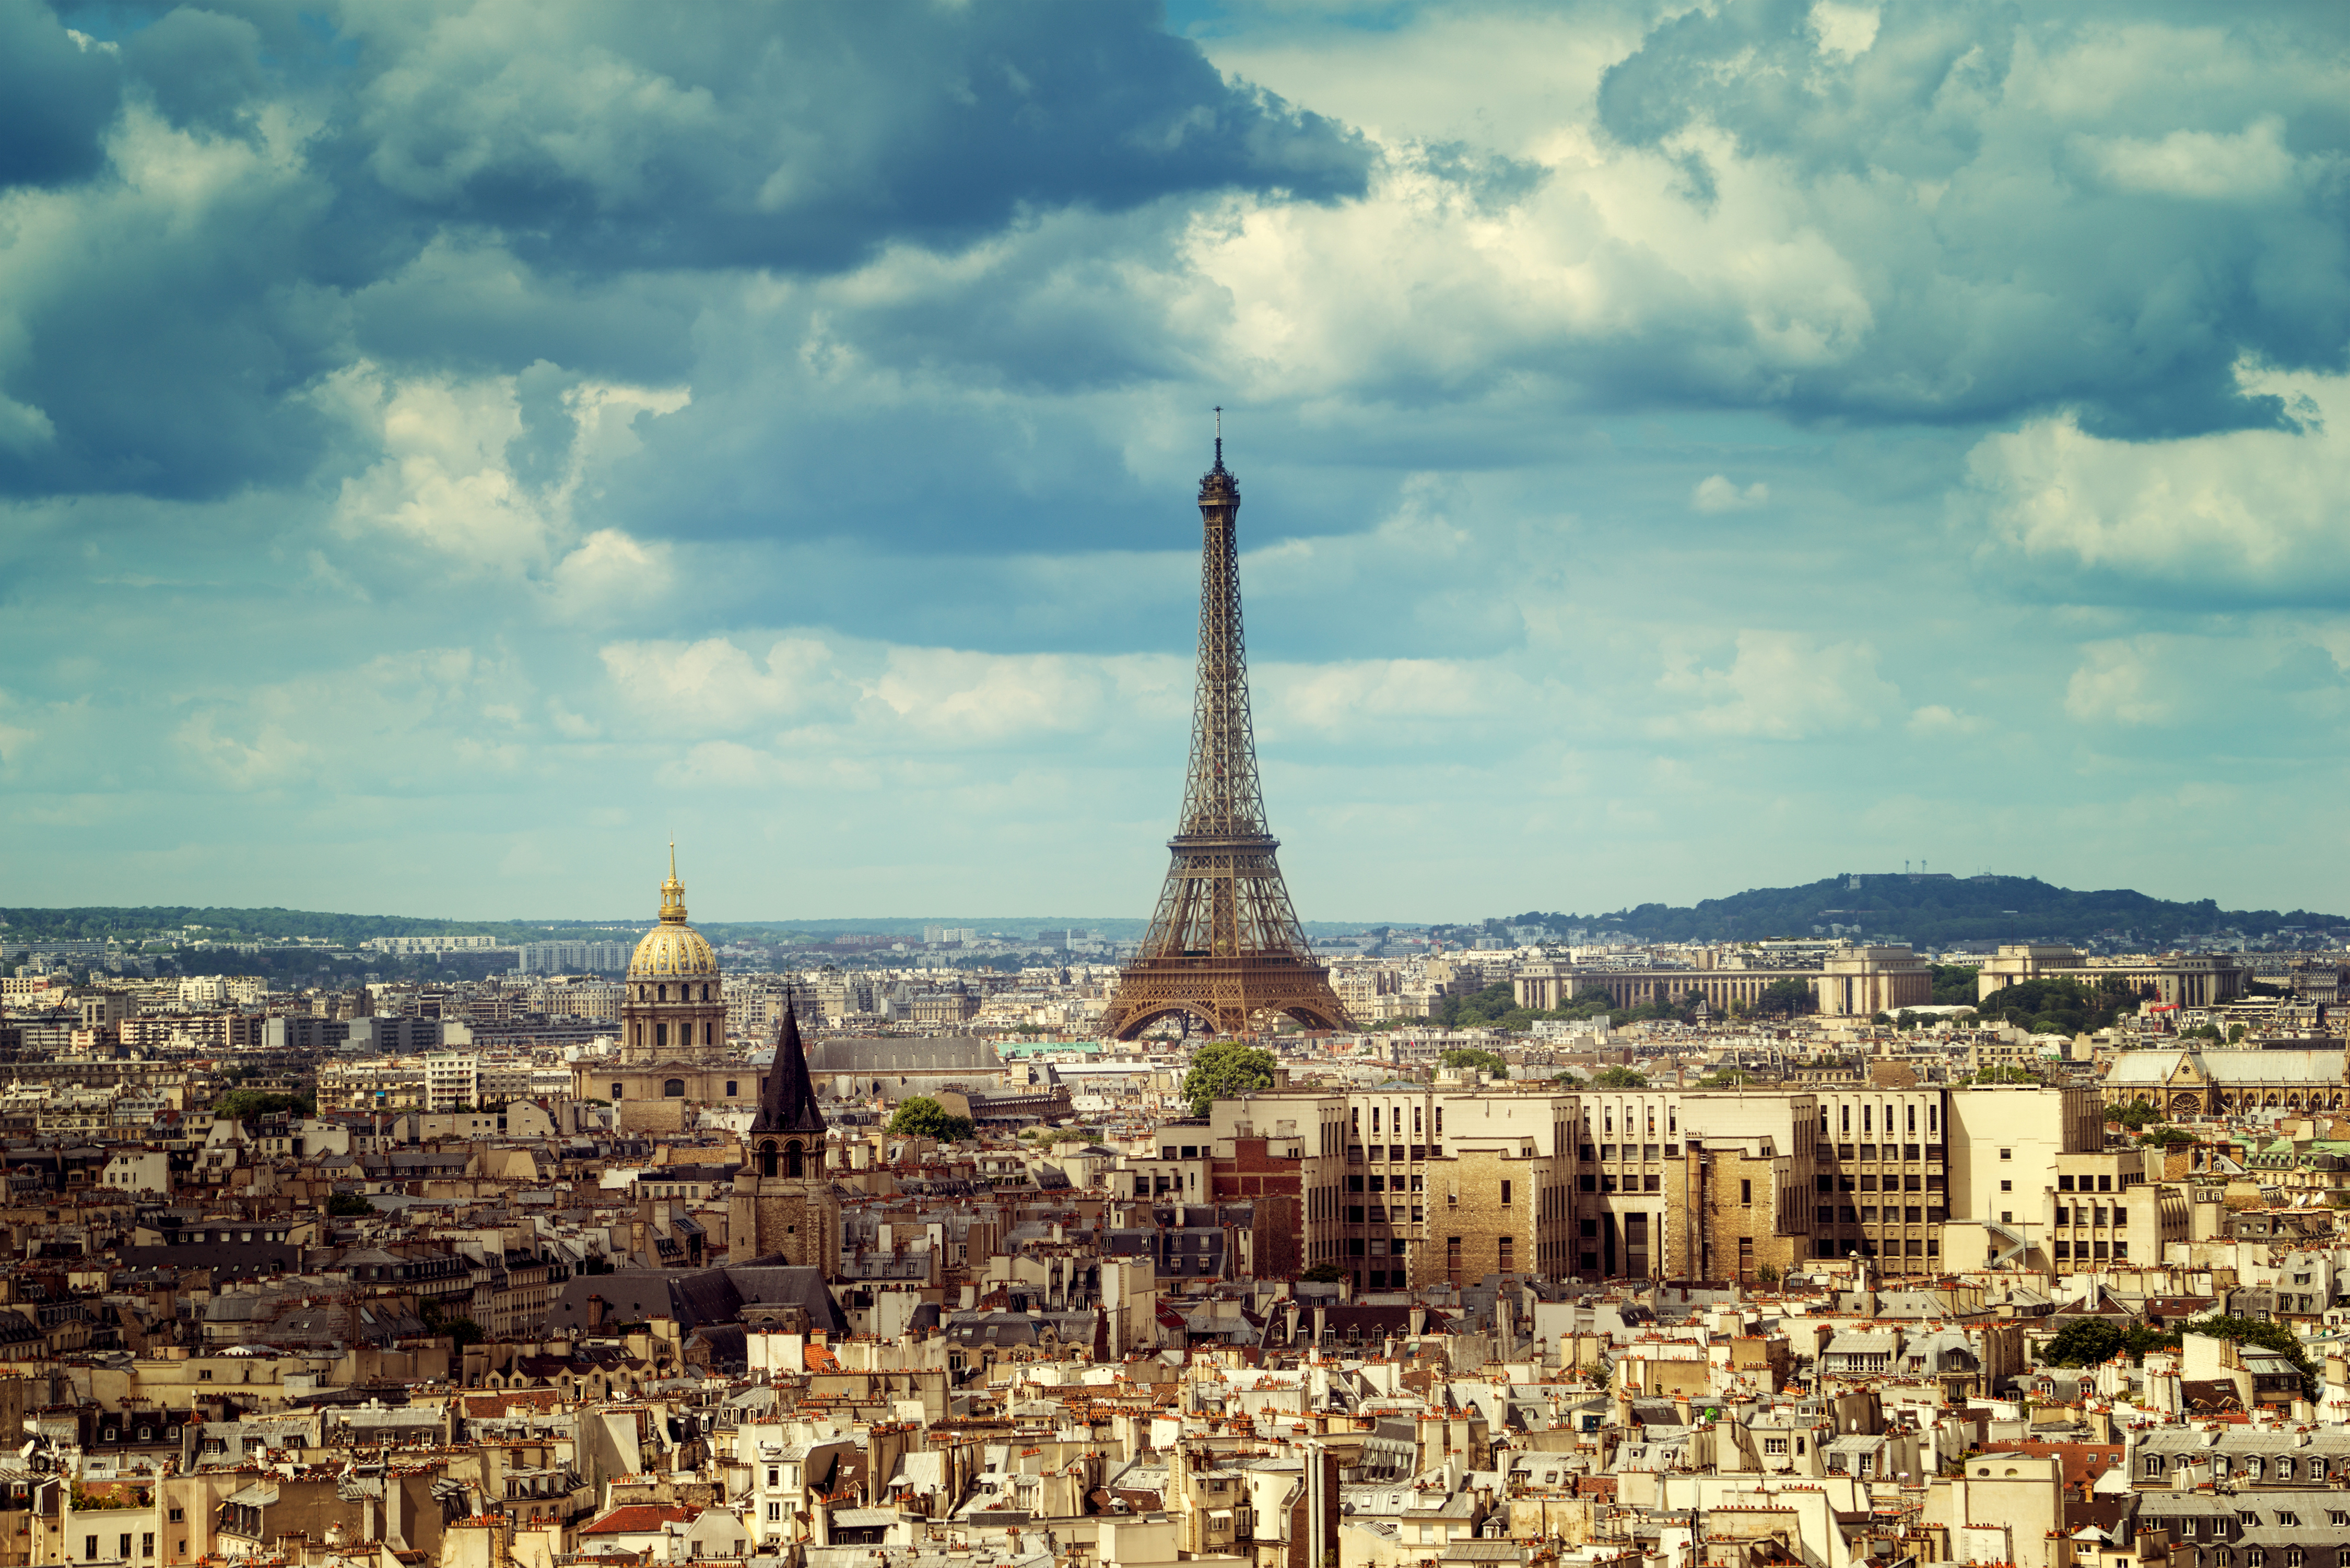 France pictures. Париж столица Франции. Эйфелева башня в Париже -столице Франции. Эйфель башня Франция. Франция Эйфелева башня (г. Париж).